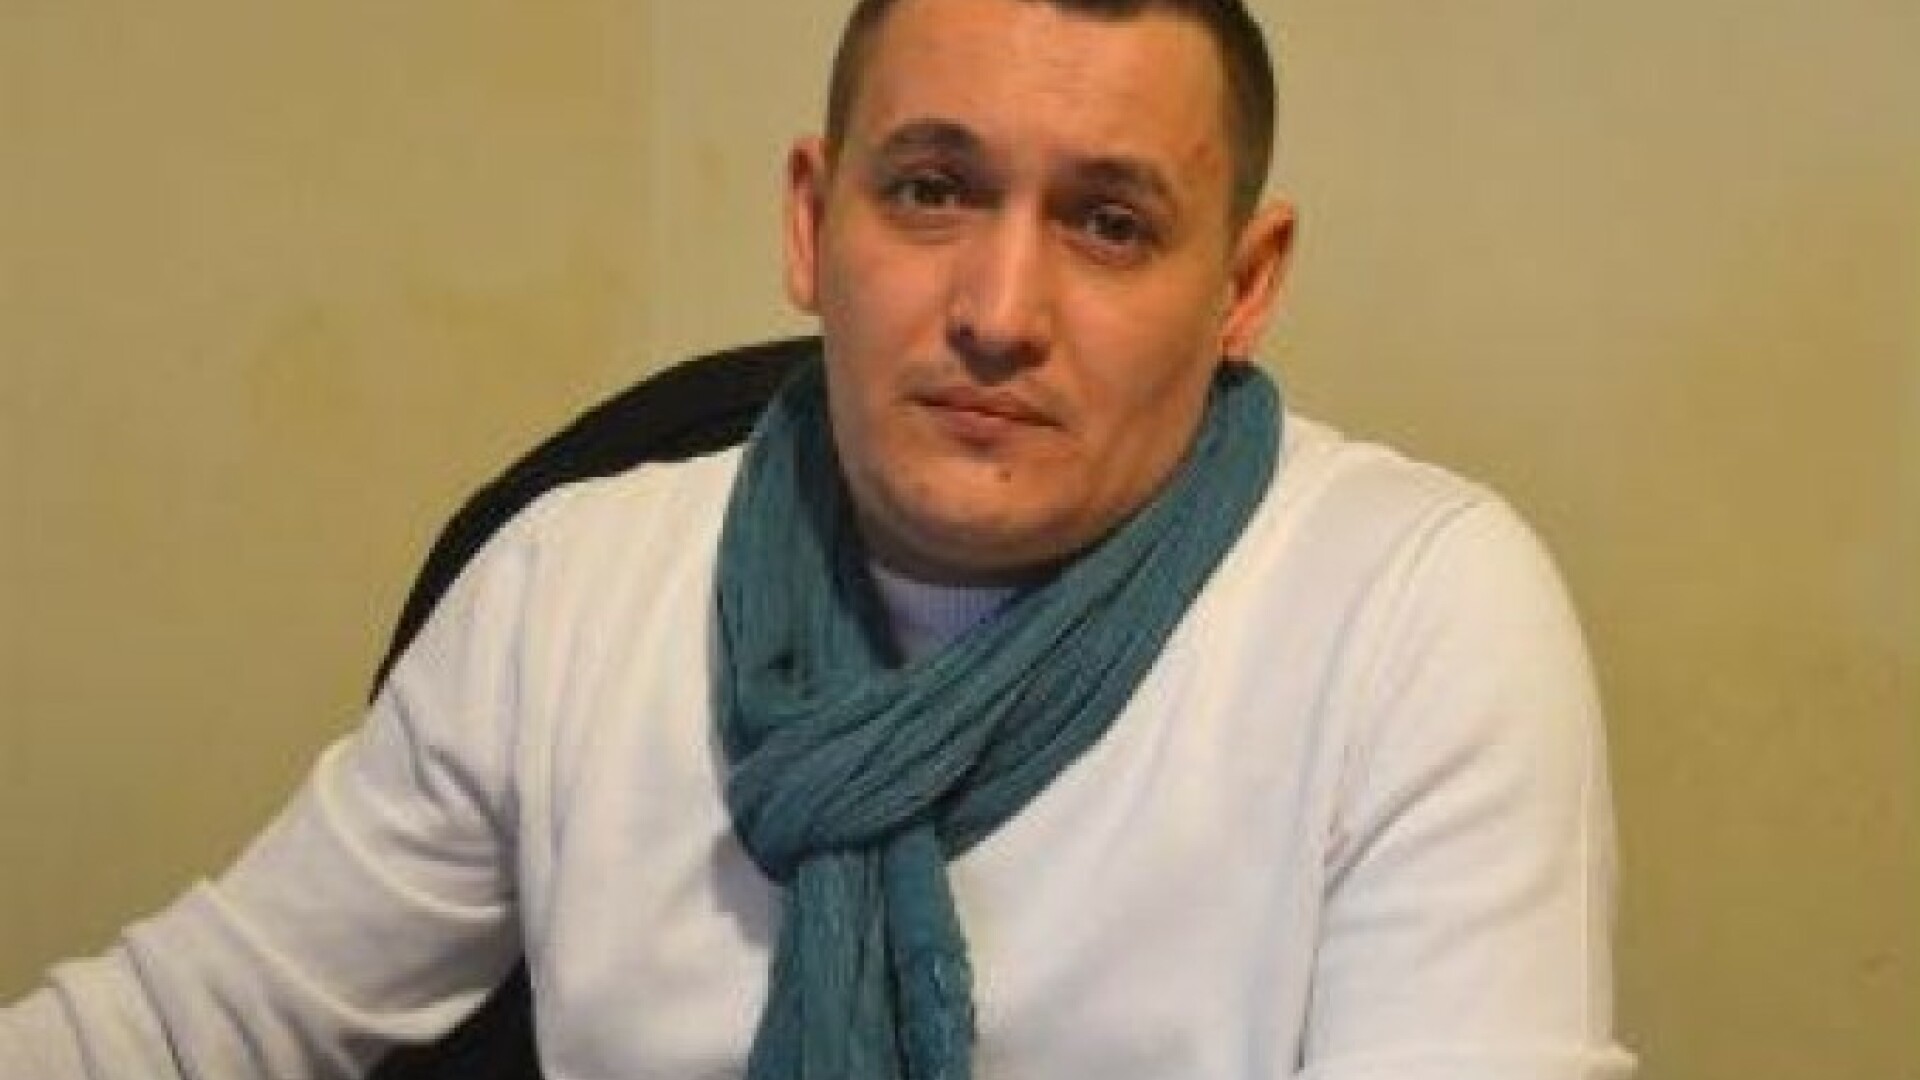 Alexandru Nedelescu